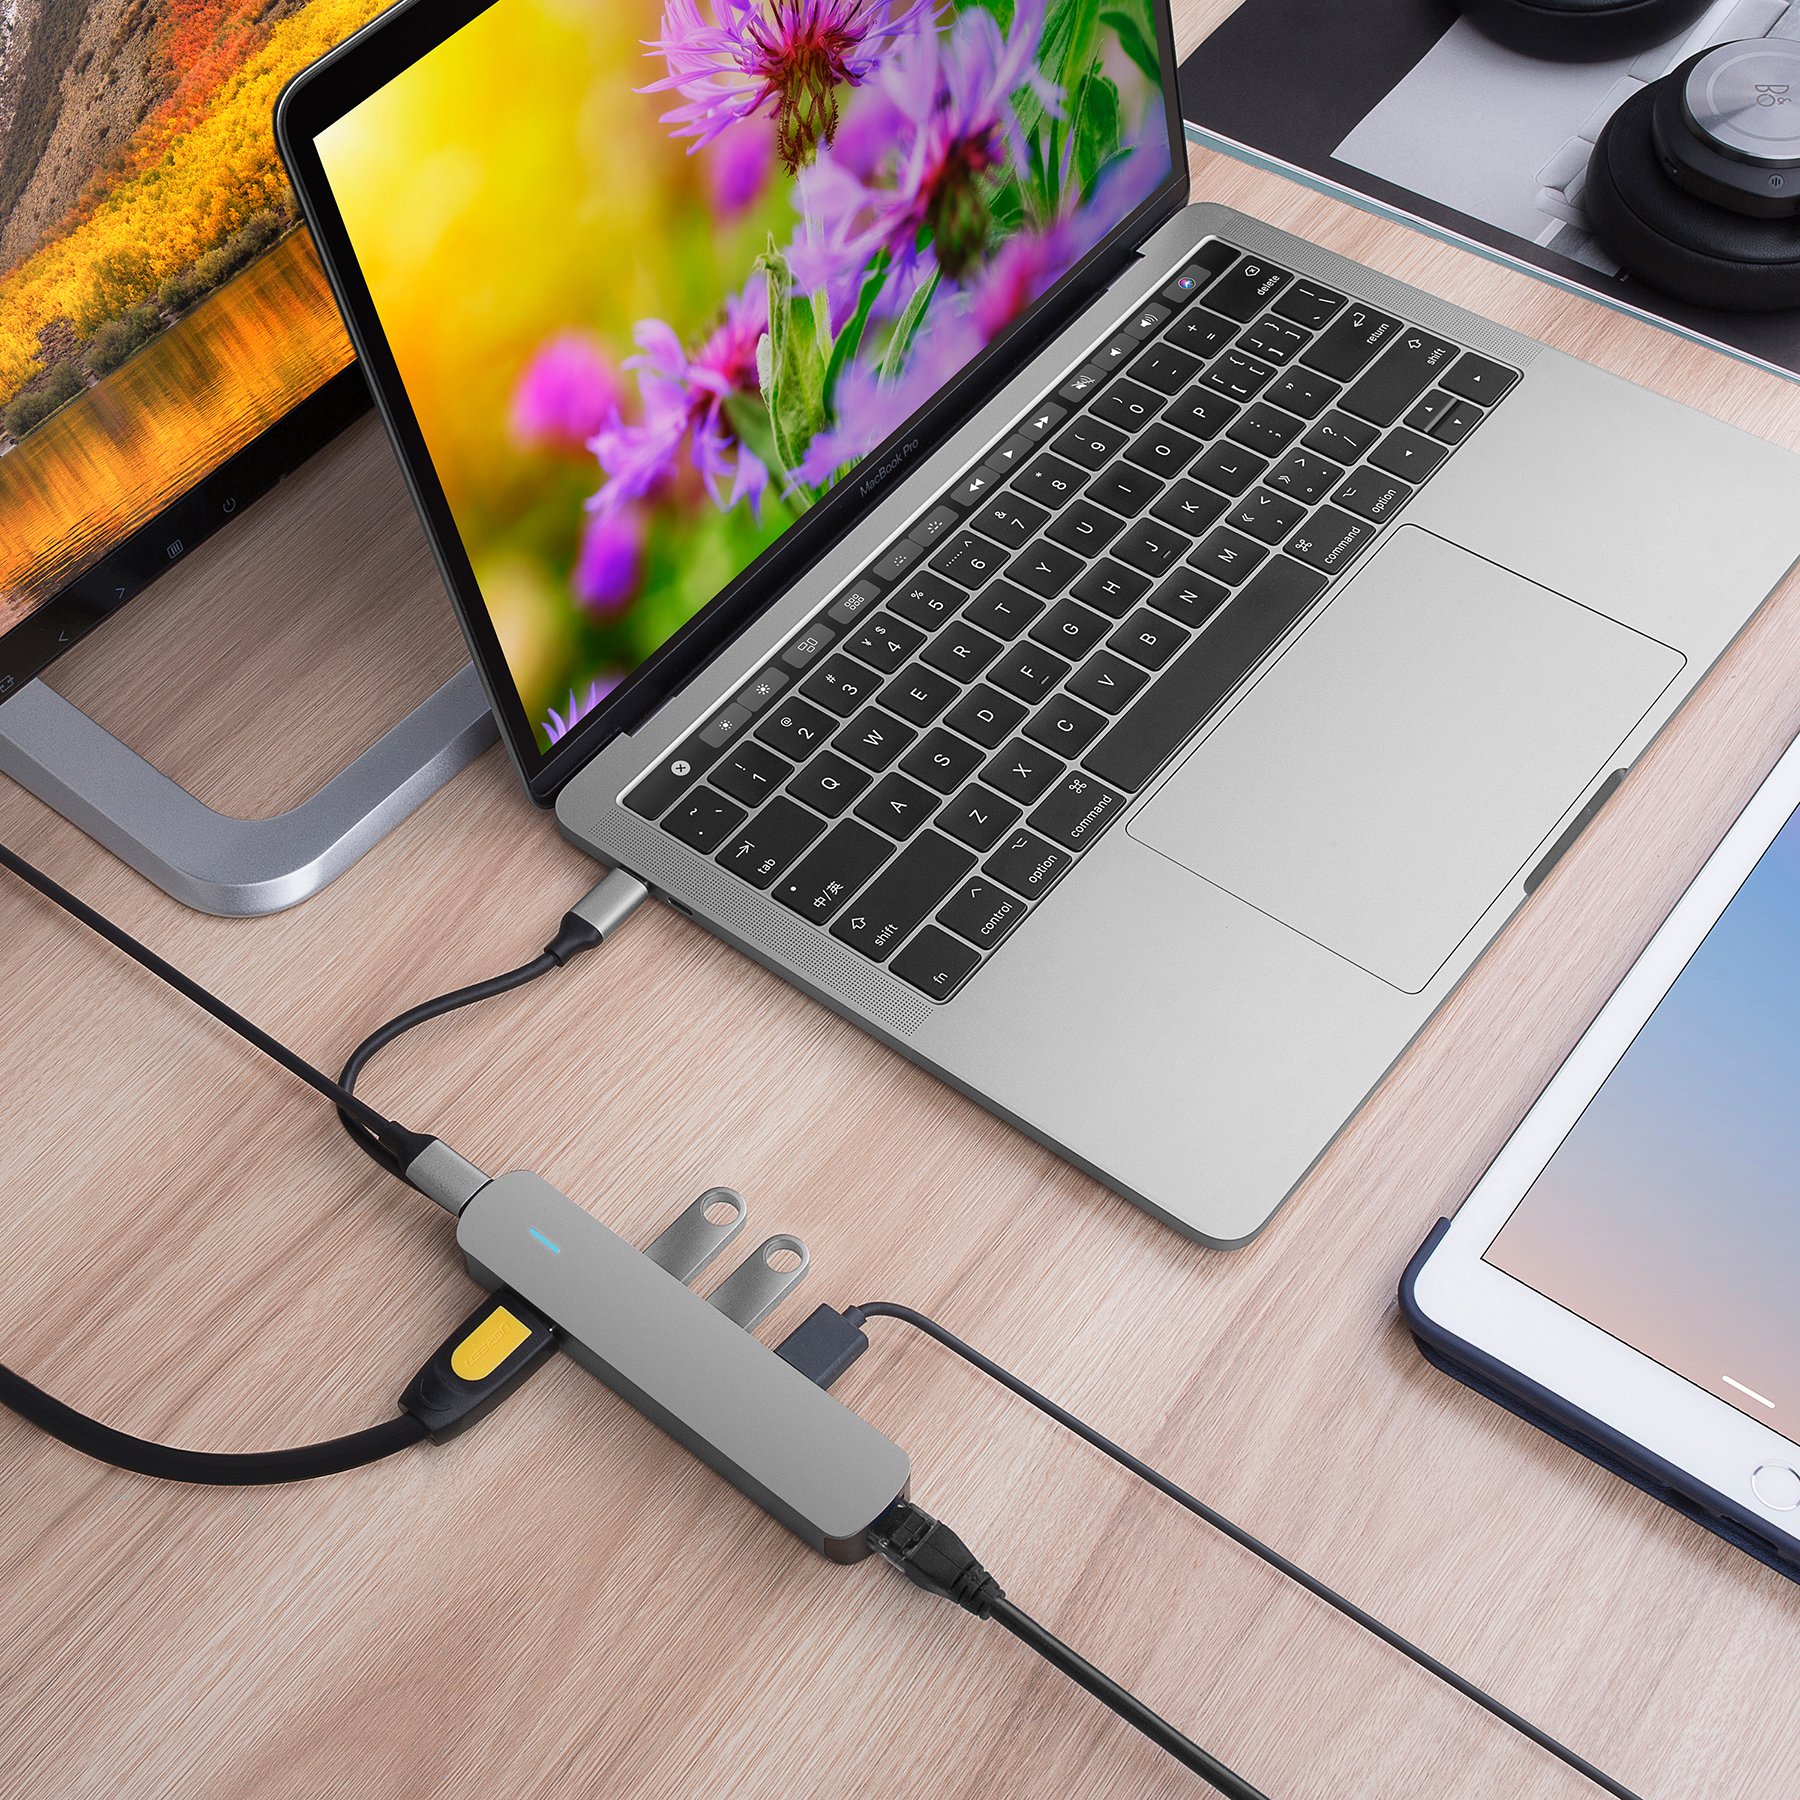 Cổng chuyển HyperDrive 4K HDMI 6-IN-1 USB-C dành cho Macbook/ Ultrabook/ Chromebook/ PC và USB-C Devices